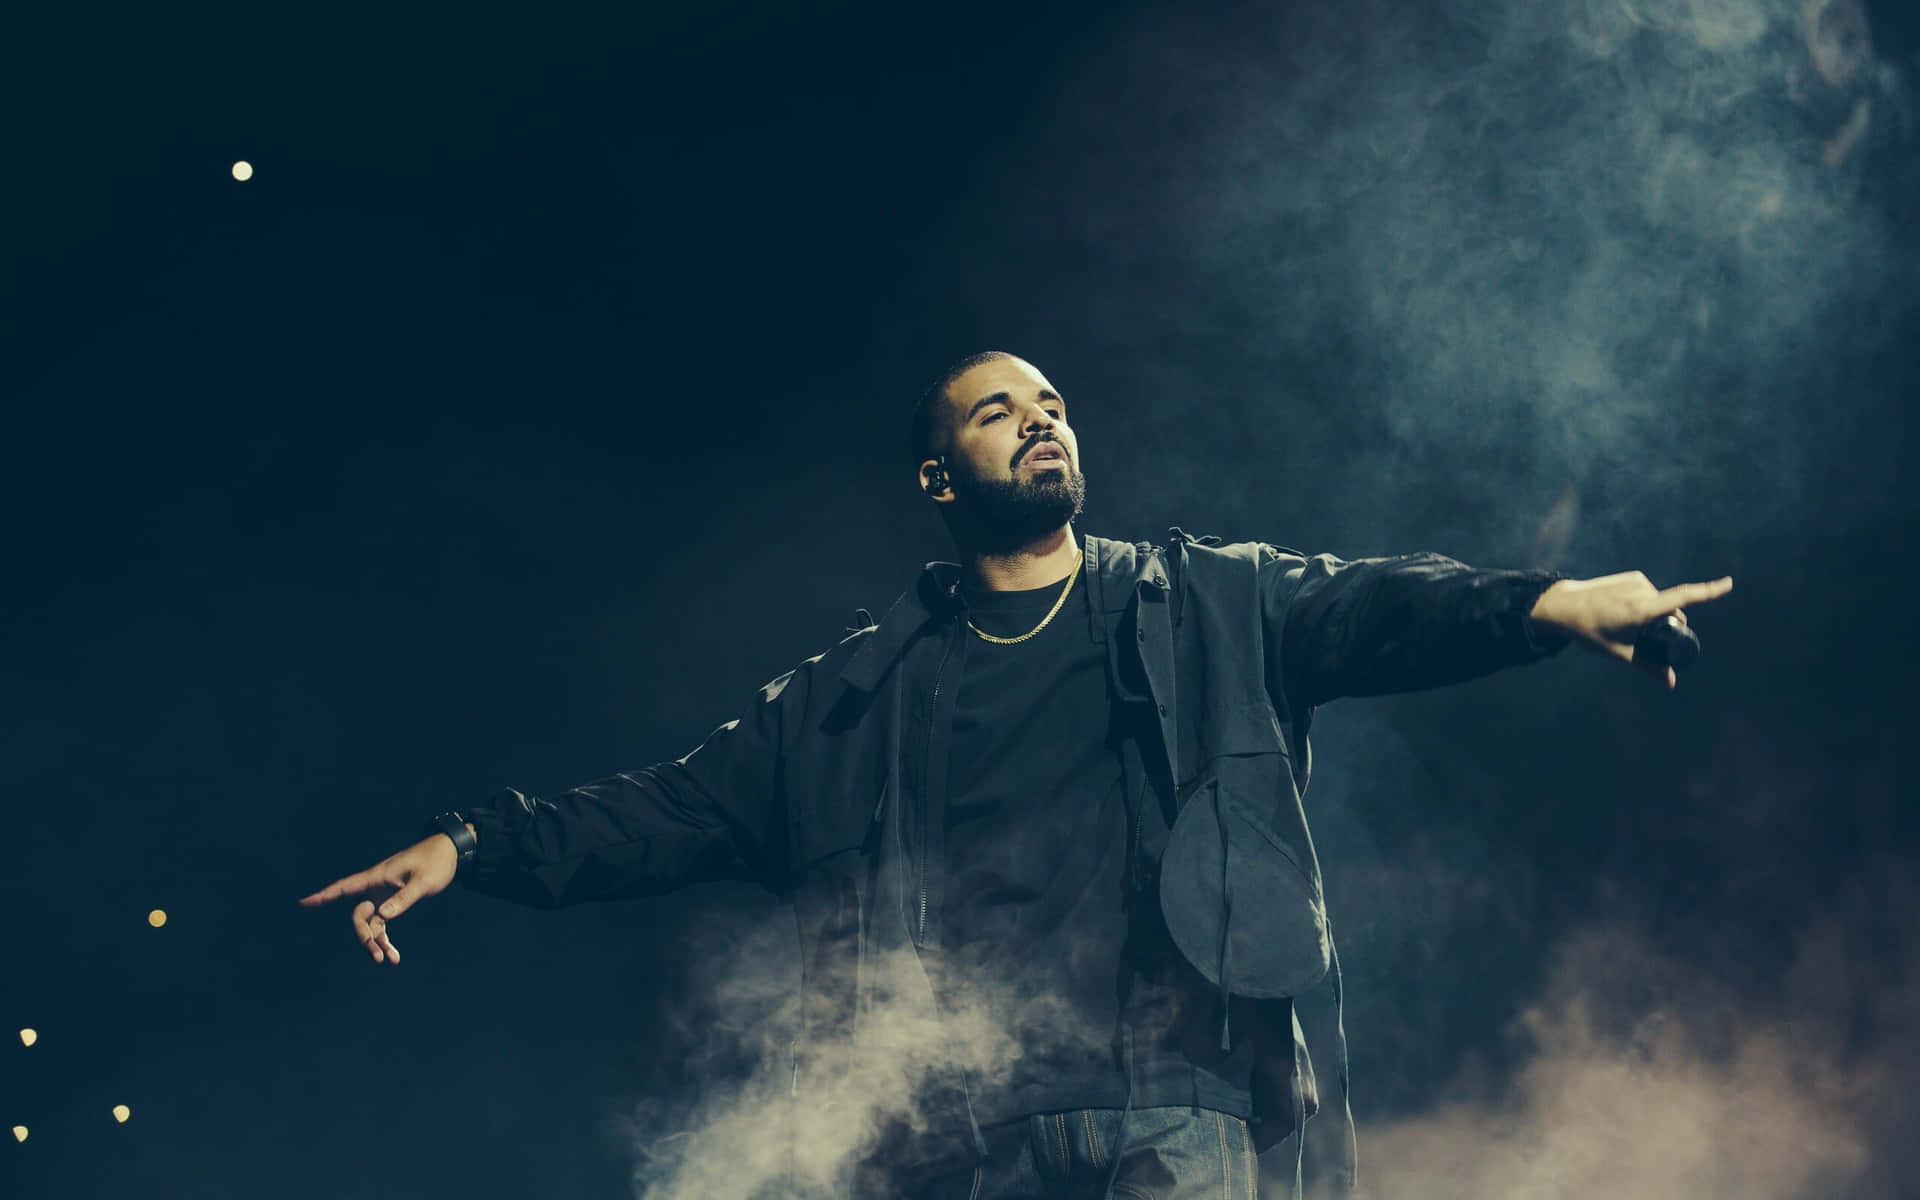 Grammy award winning artist Drake at his peak